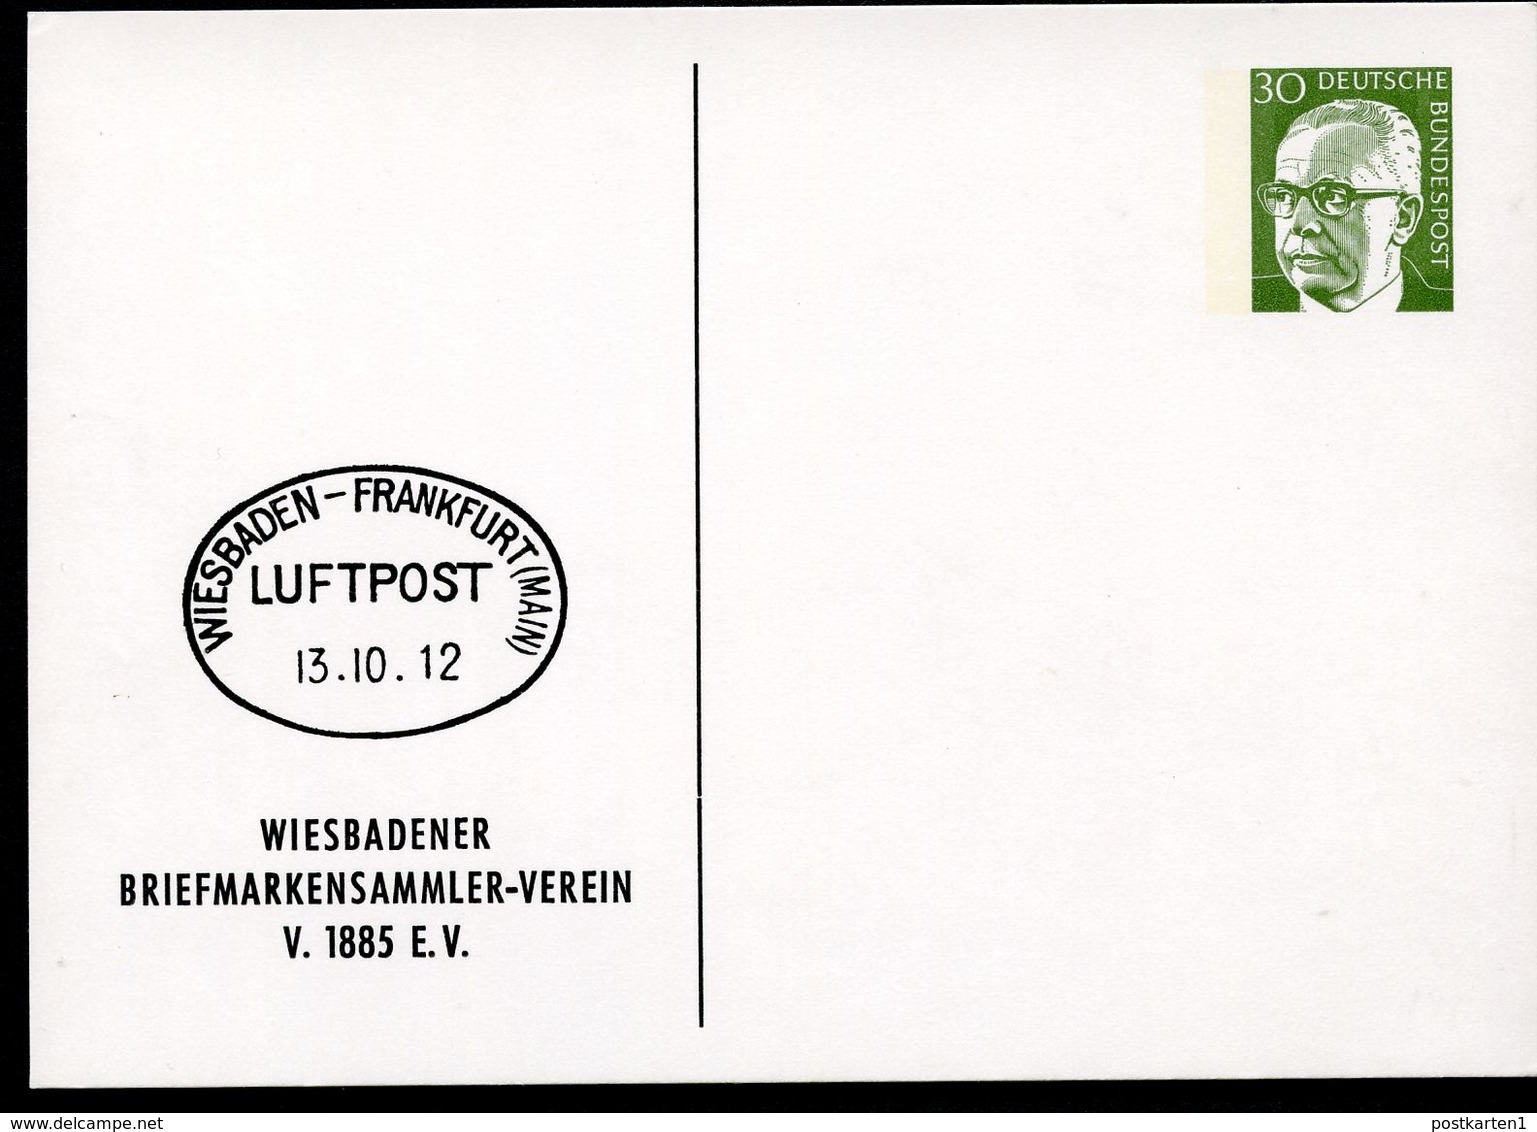 Bund PP46 B2/004-I LUFTPOSTSTEMPEL WIESBADEN - FRANKFURT 1912 1972  NGK 4,00 € - Privatpostkarten - Ungebraucht